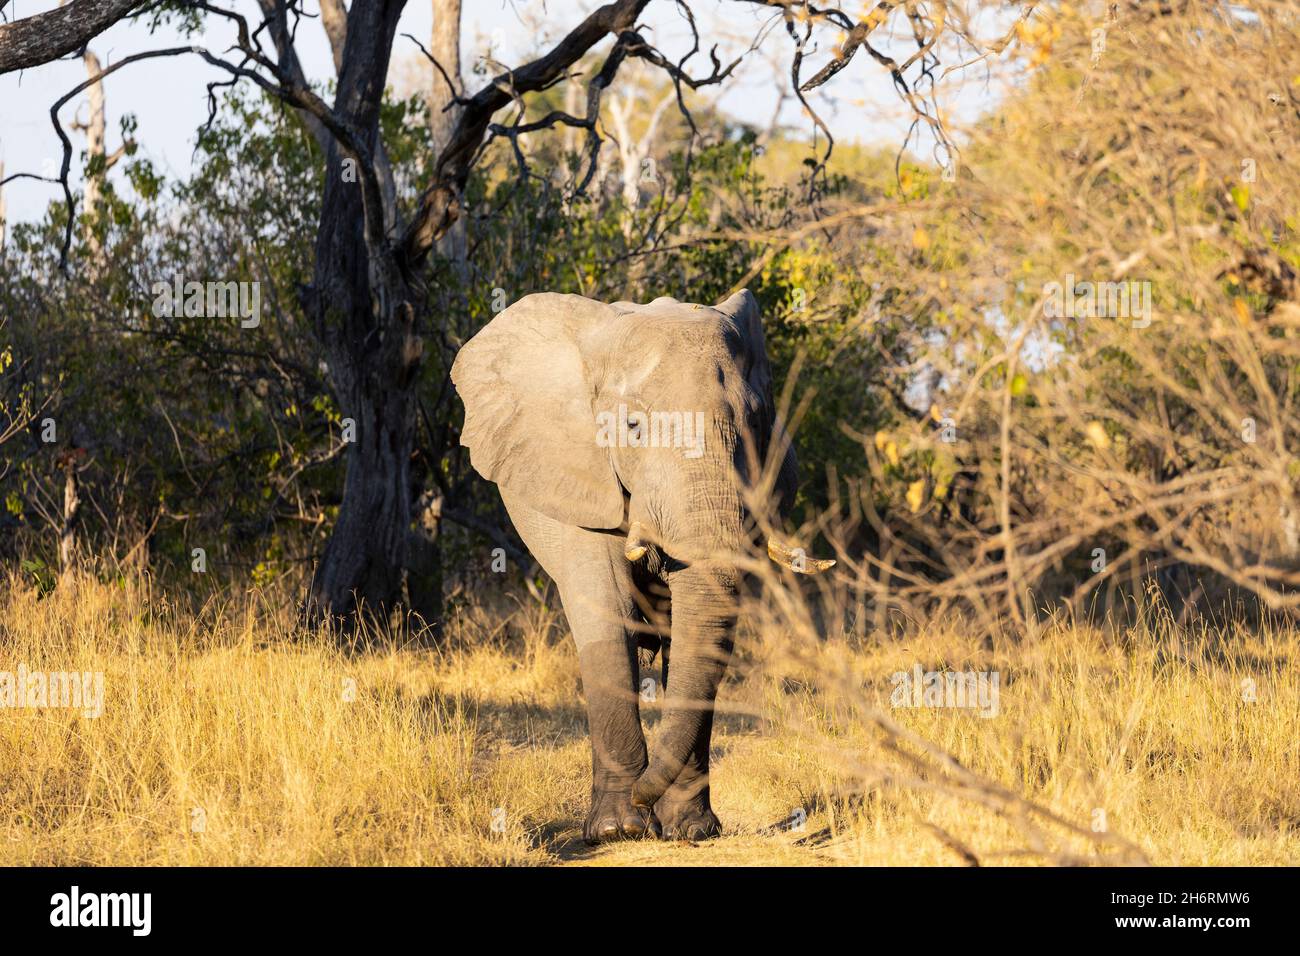 Ein einziges Tier, loxodonta africanus, ein reifer afrikanischer Elefant. Stockfoto